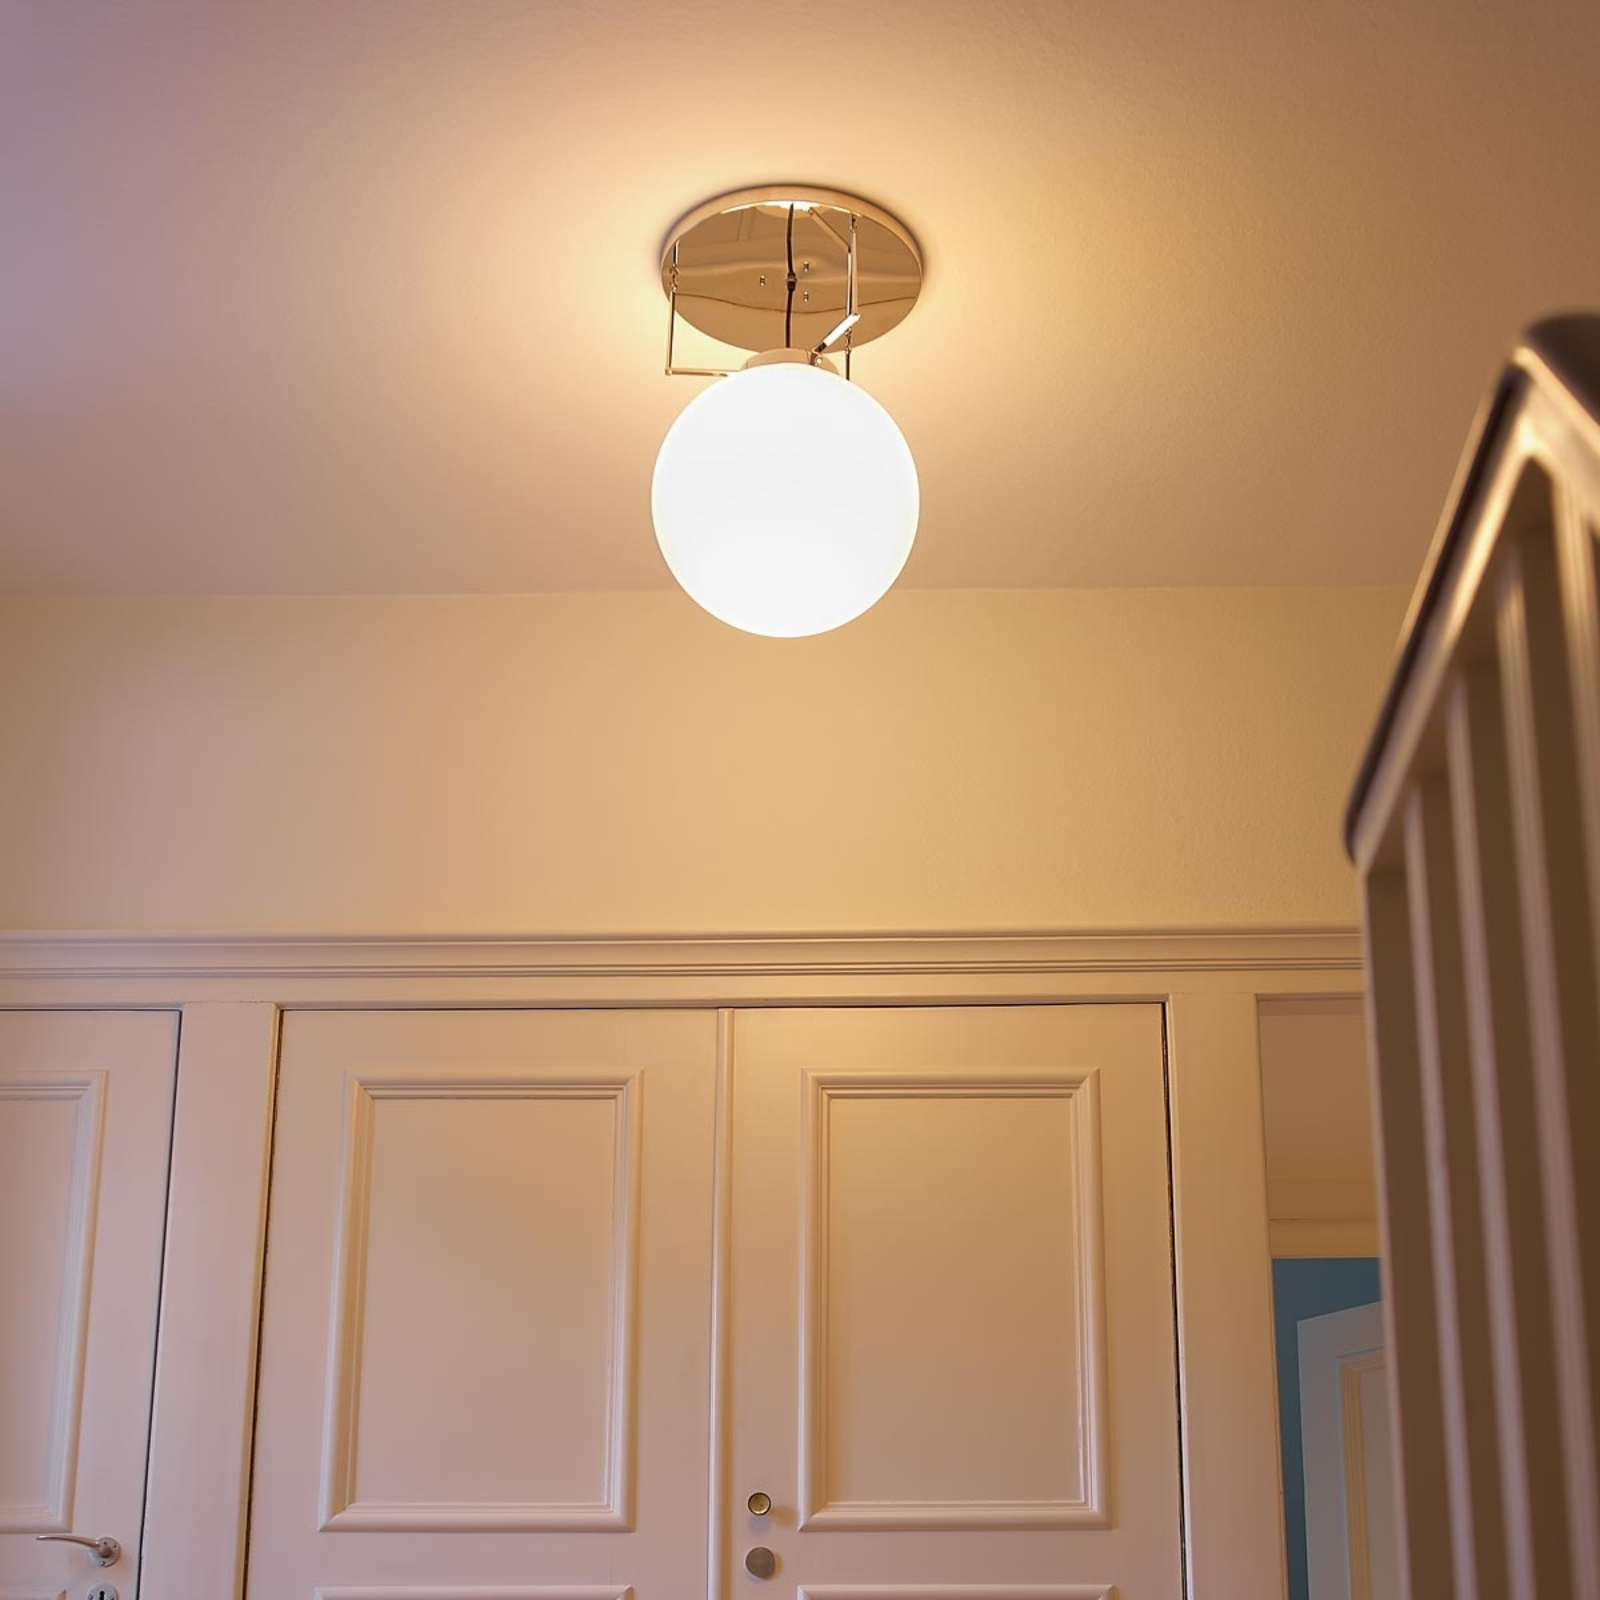 Productiecentrum Drastisch hier Plafondlamp van messing in Bauhaus-stijl | Lampen24.be